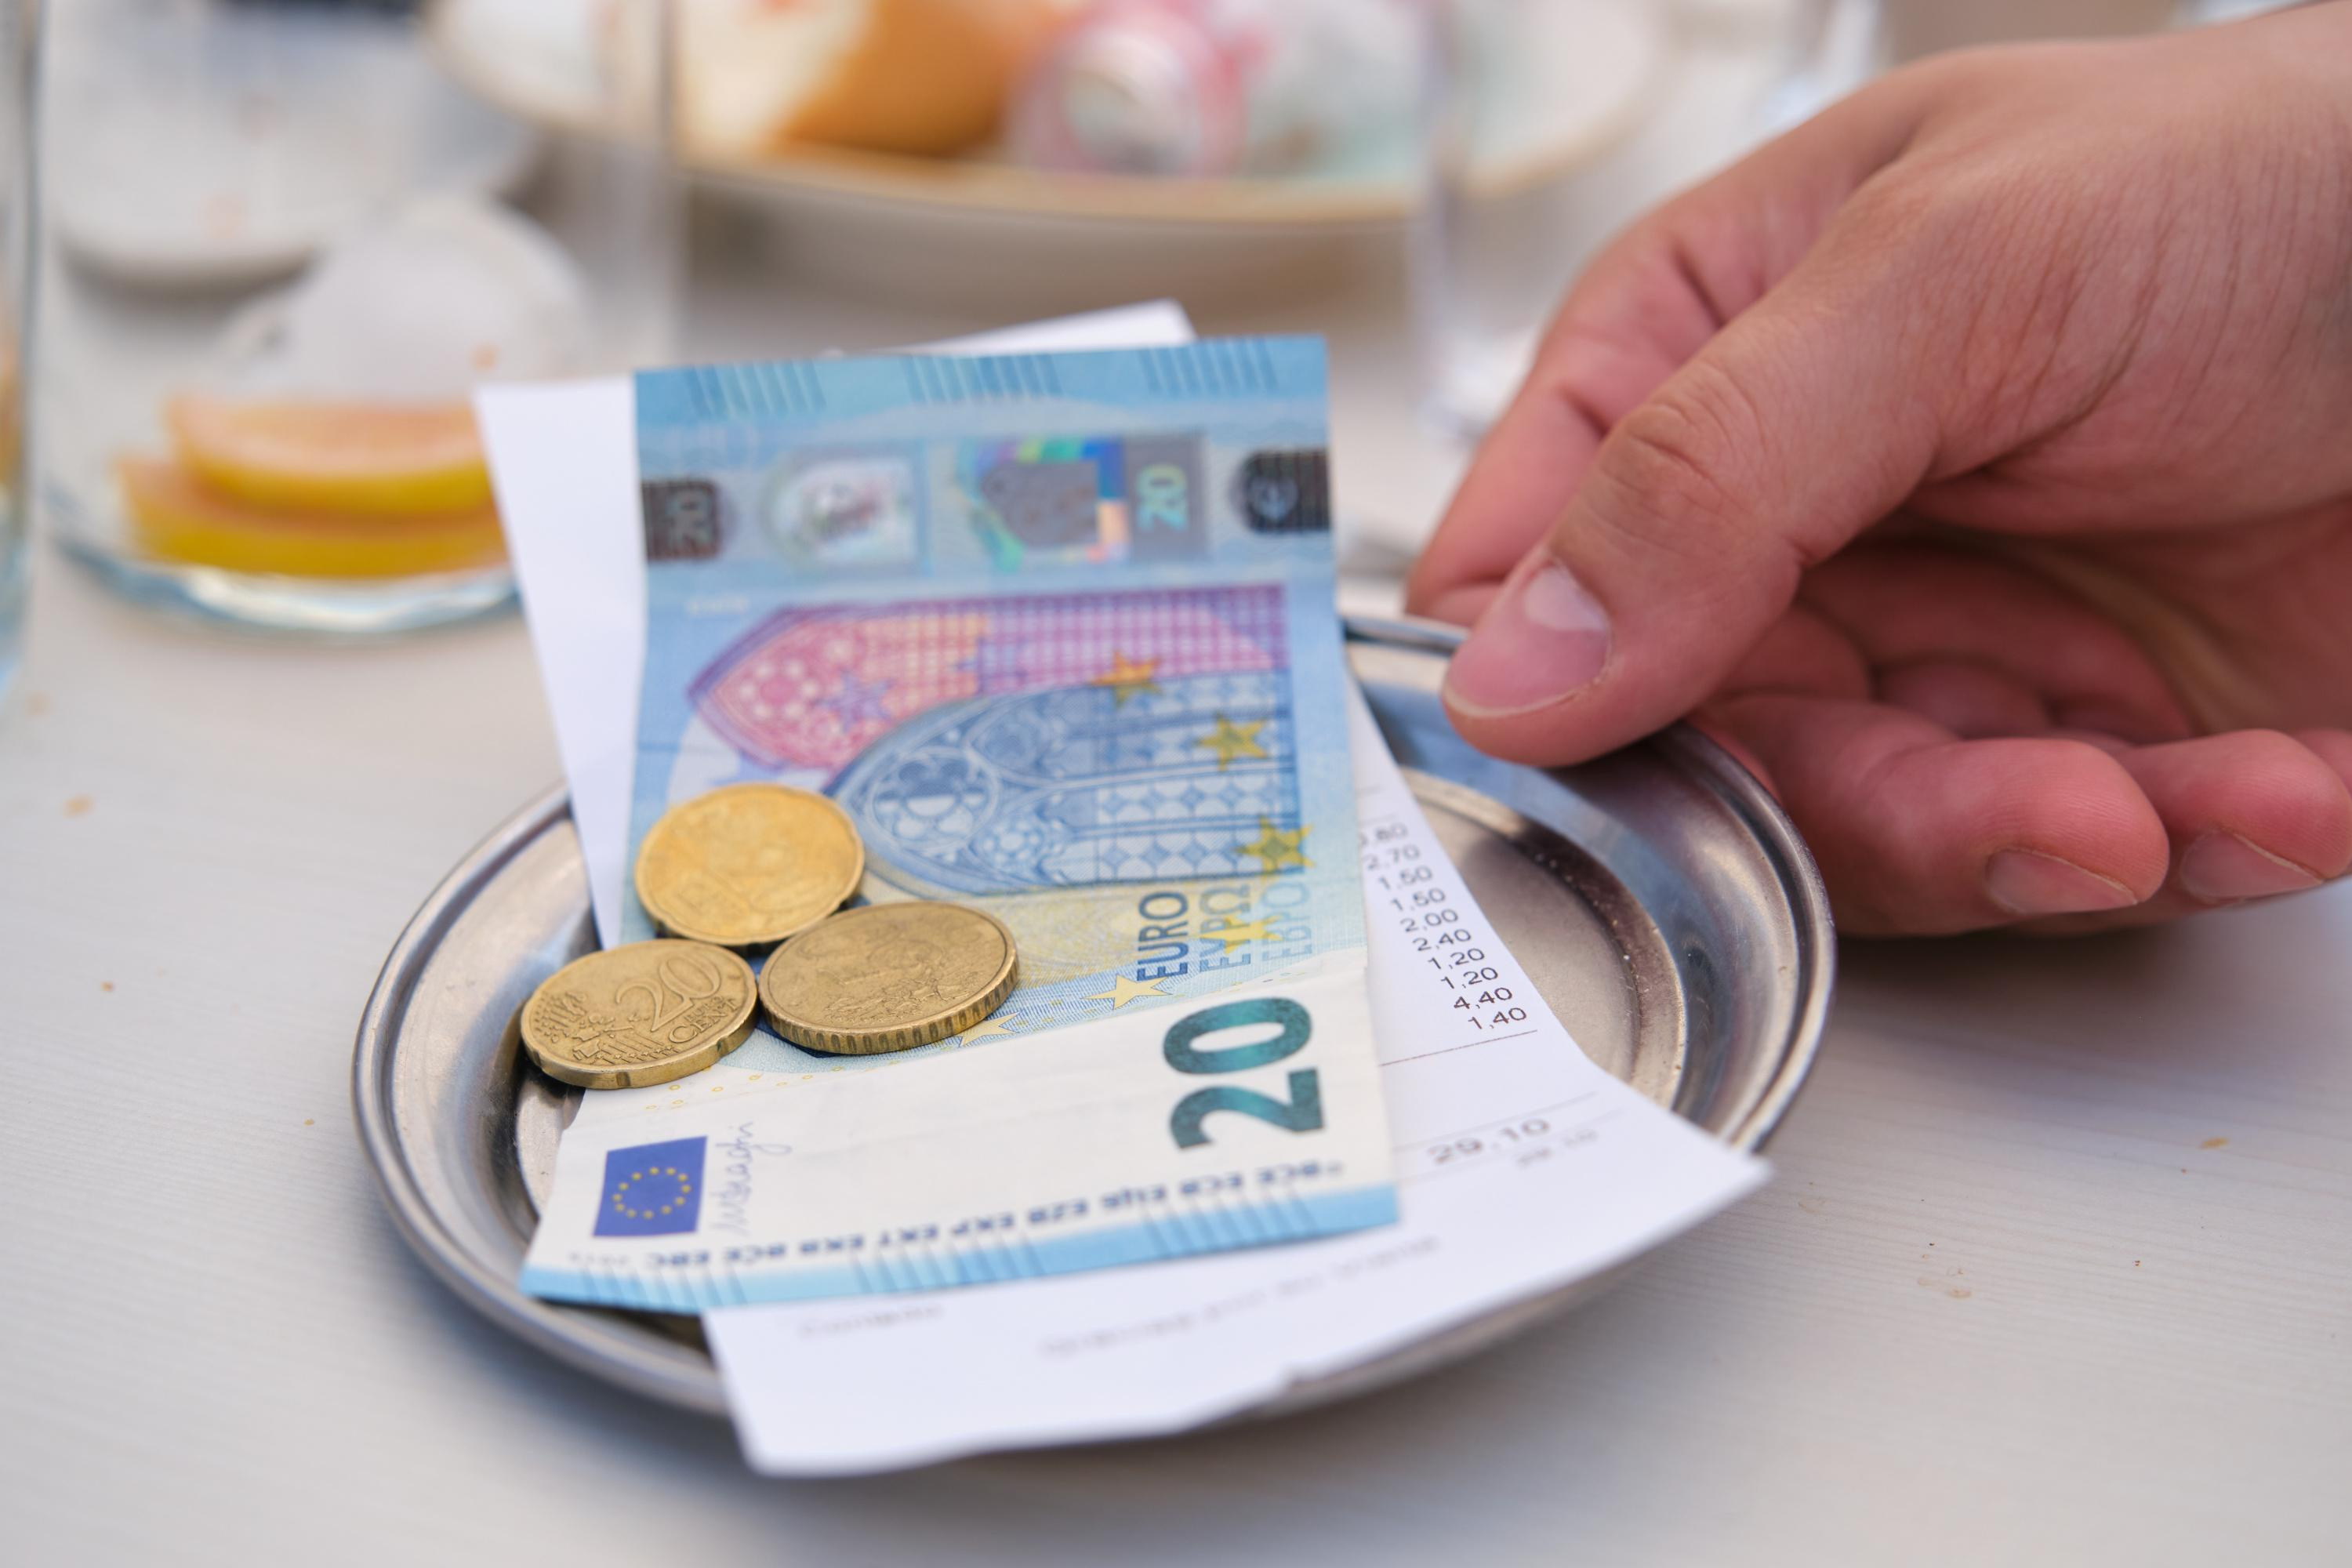 Deux, trois ou cent euros: qui sont les clients les plus généreux en pourboires?